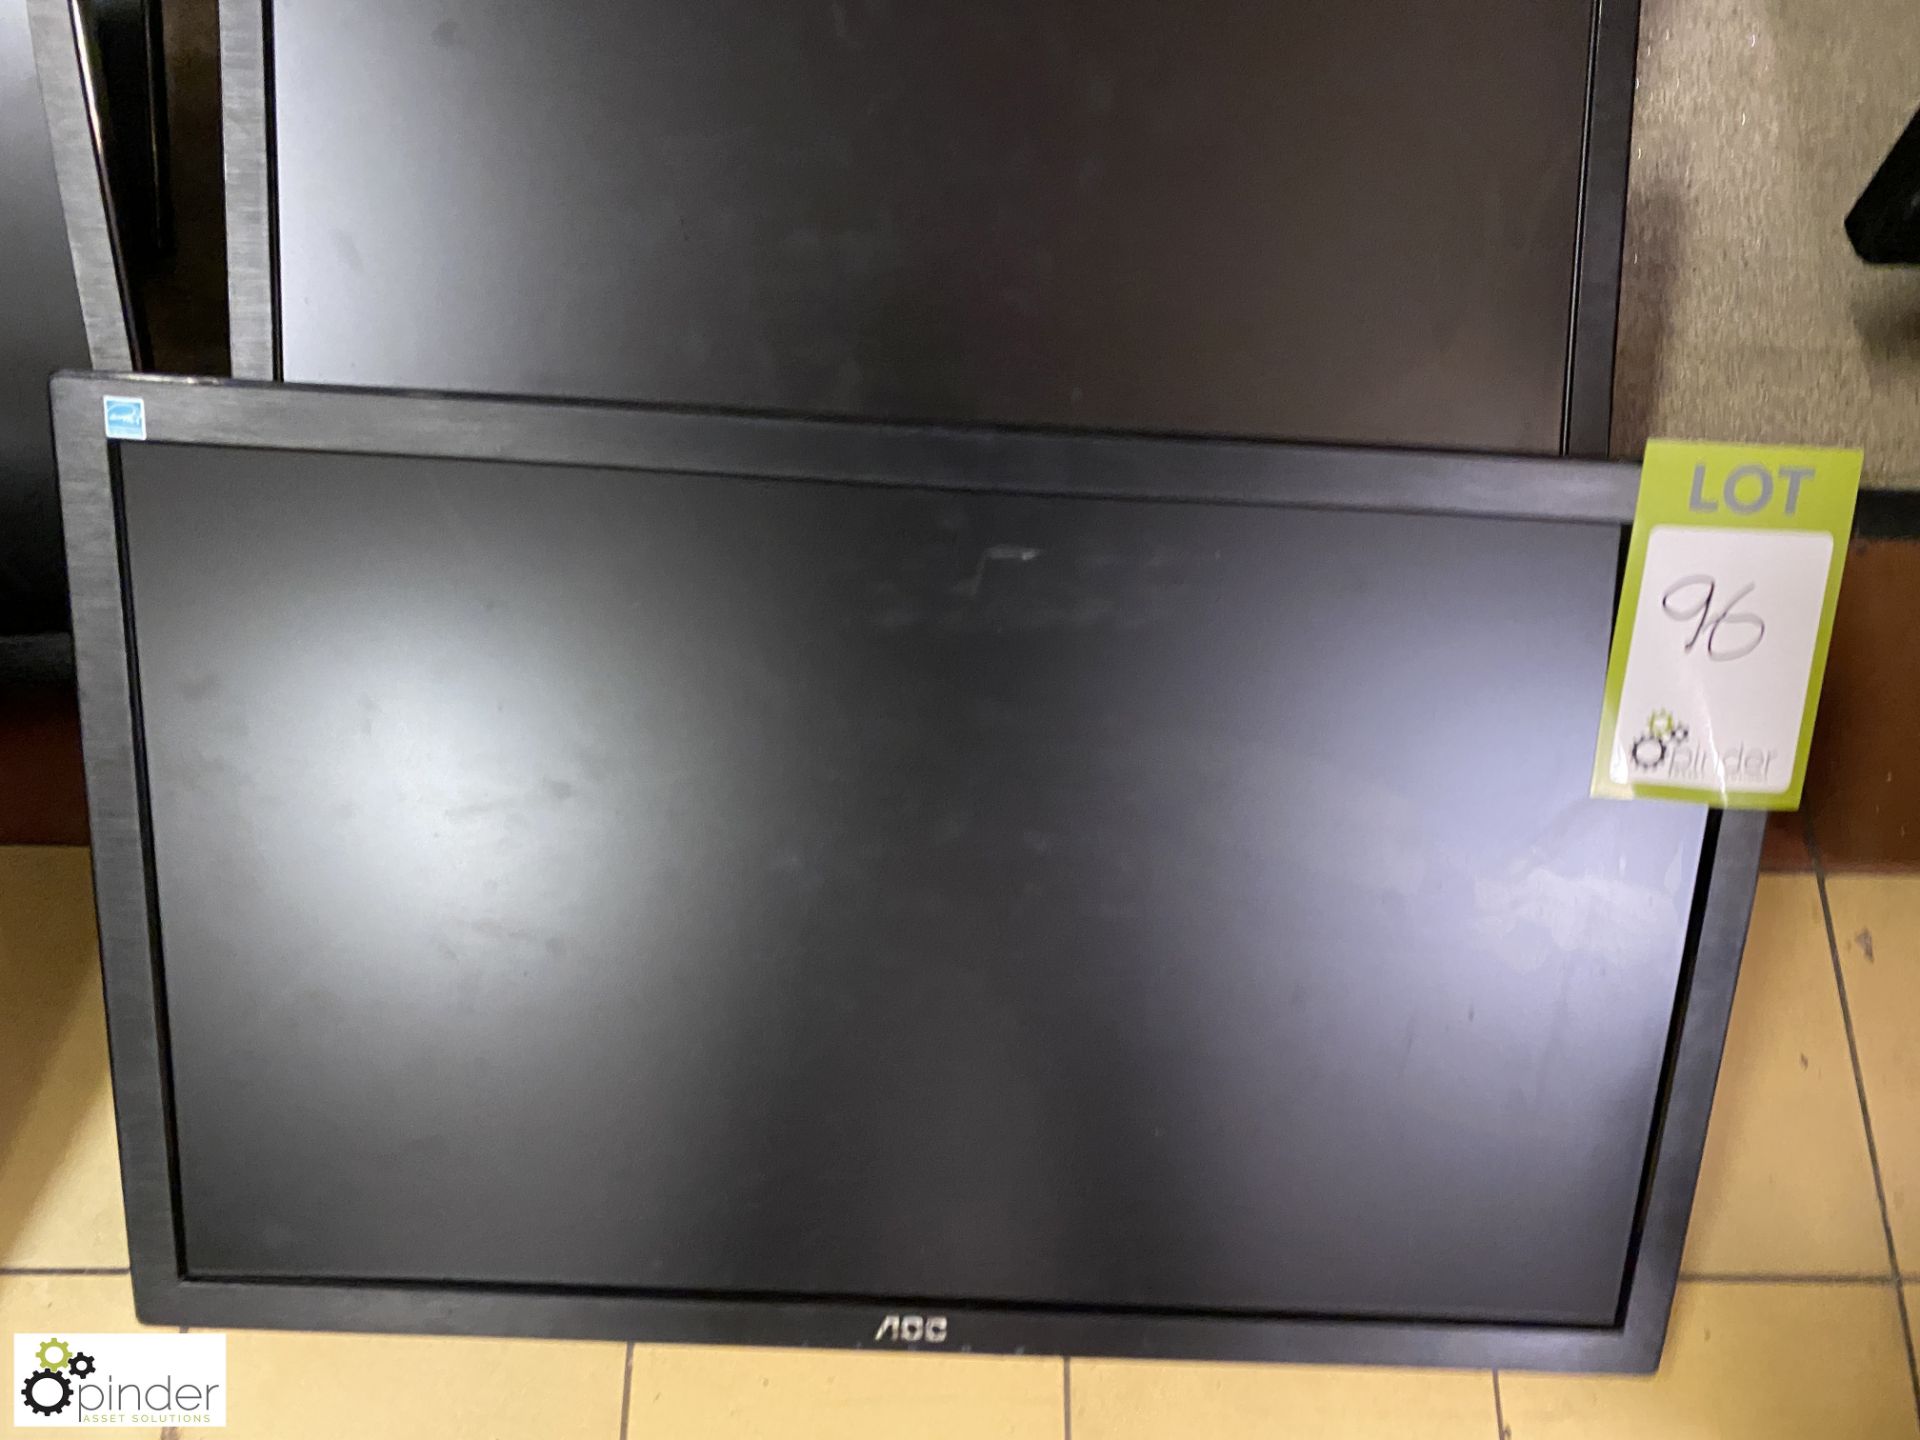 3 AOC 12276 Flat Panel Monitors, no stand - Image 2 of 4